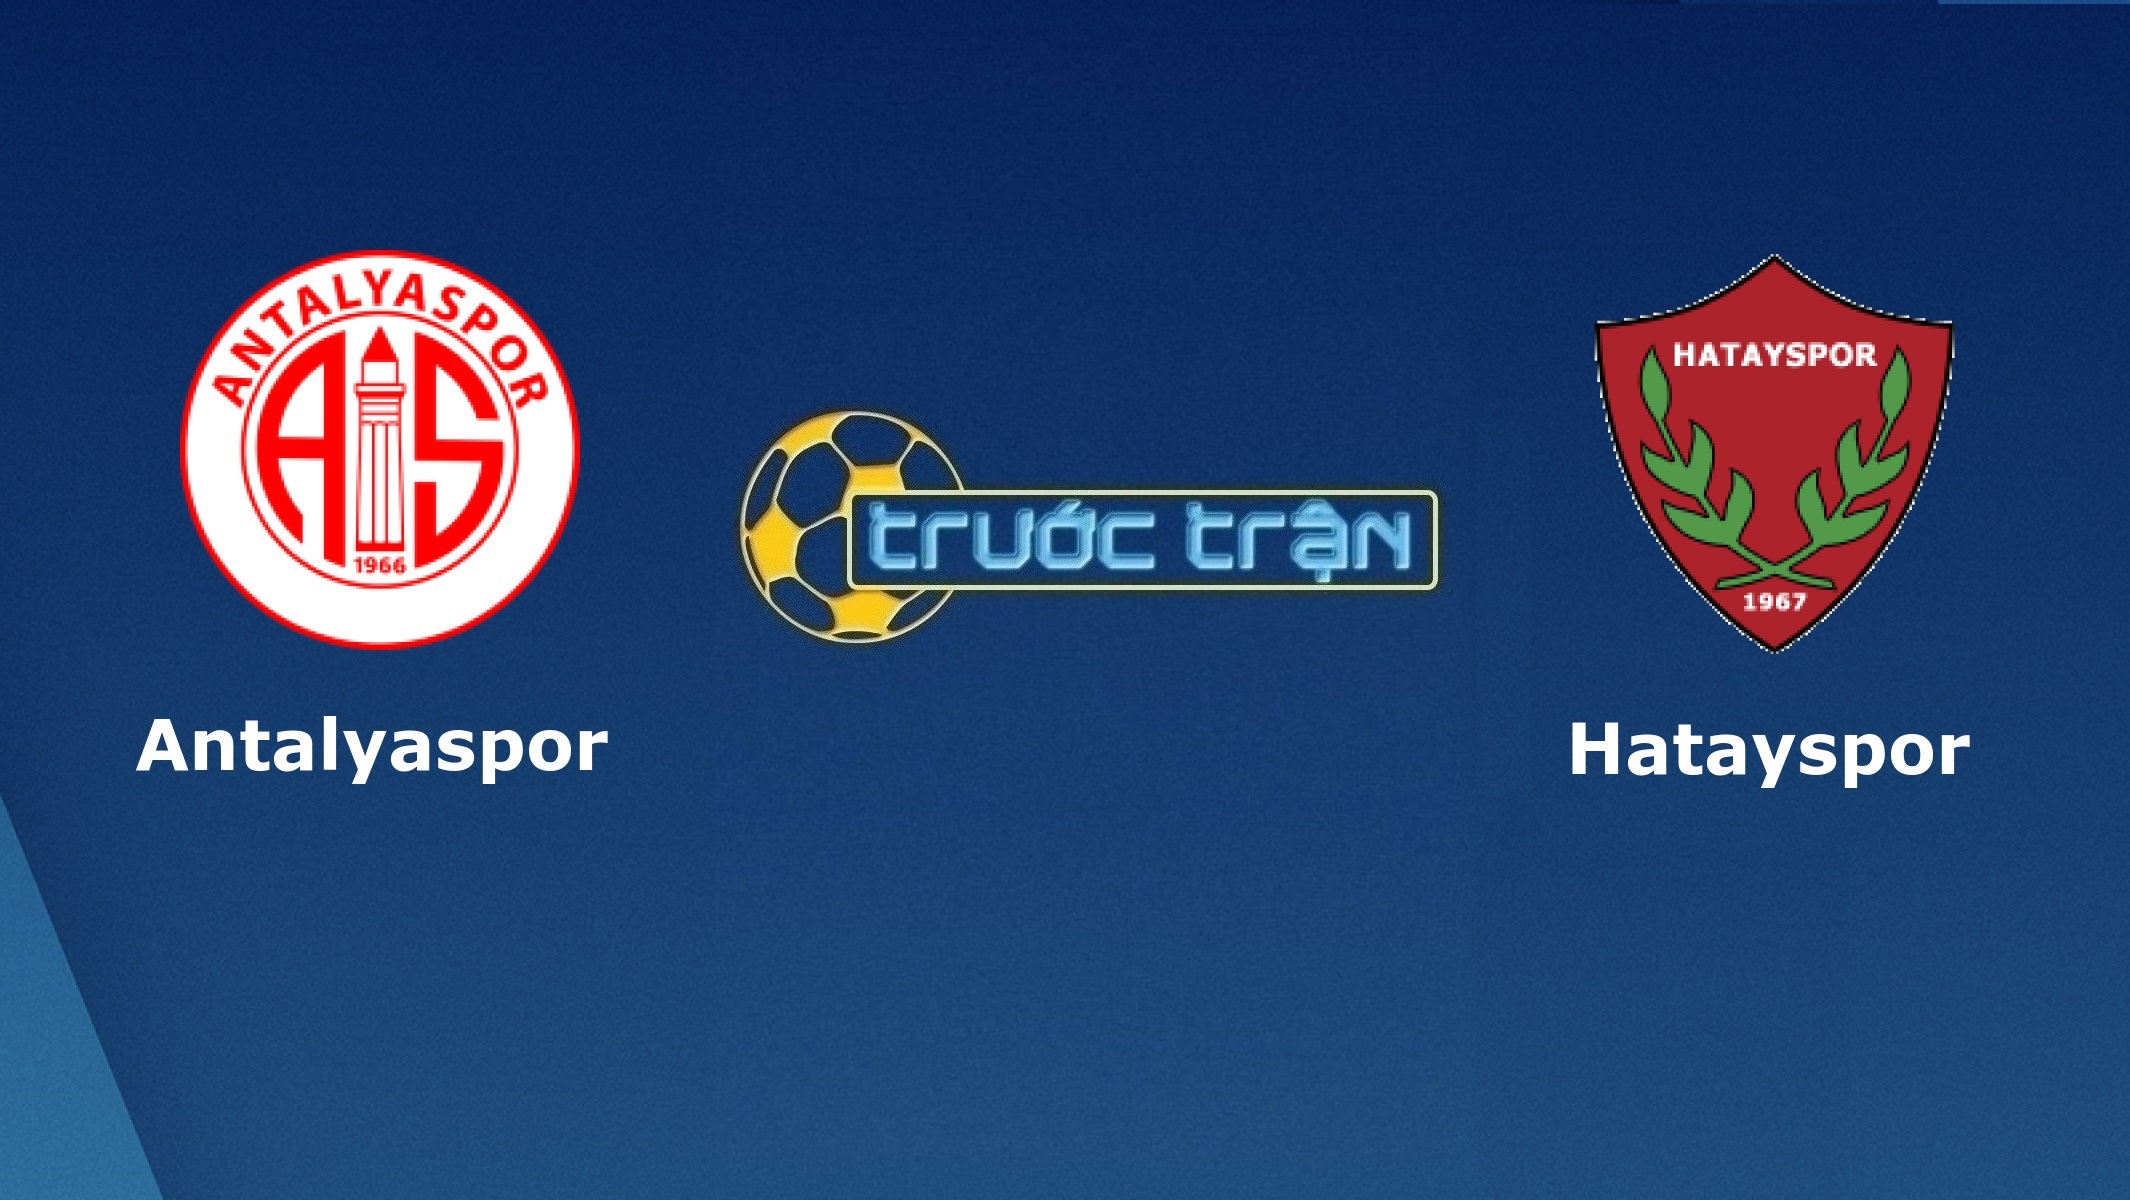 Antalyaspor vs Hatayspor – Tip kèo bóng đá hôm nay – 23h00 28/12/2020